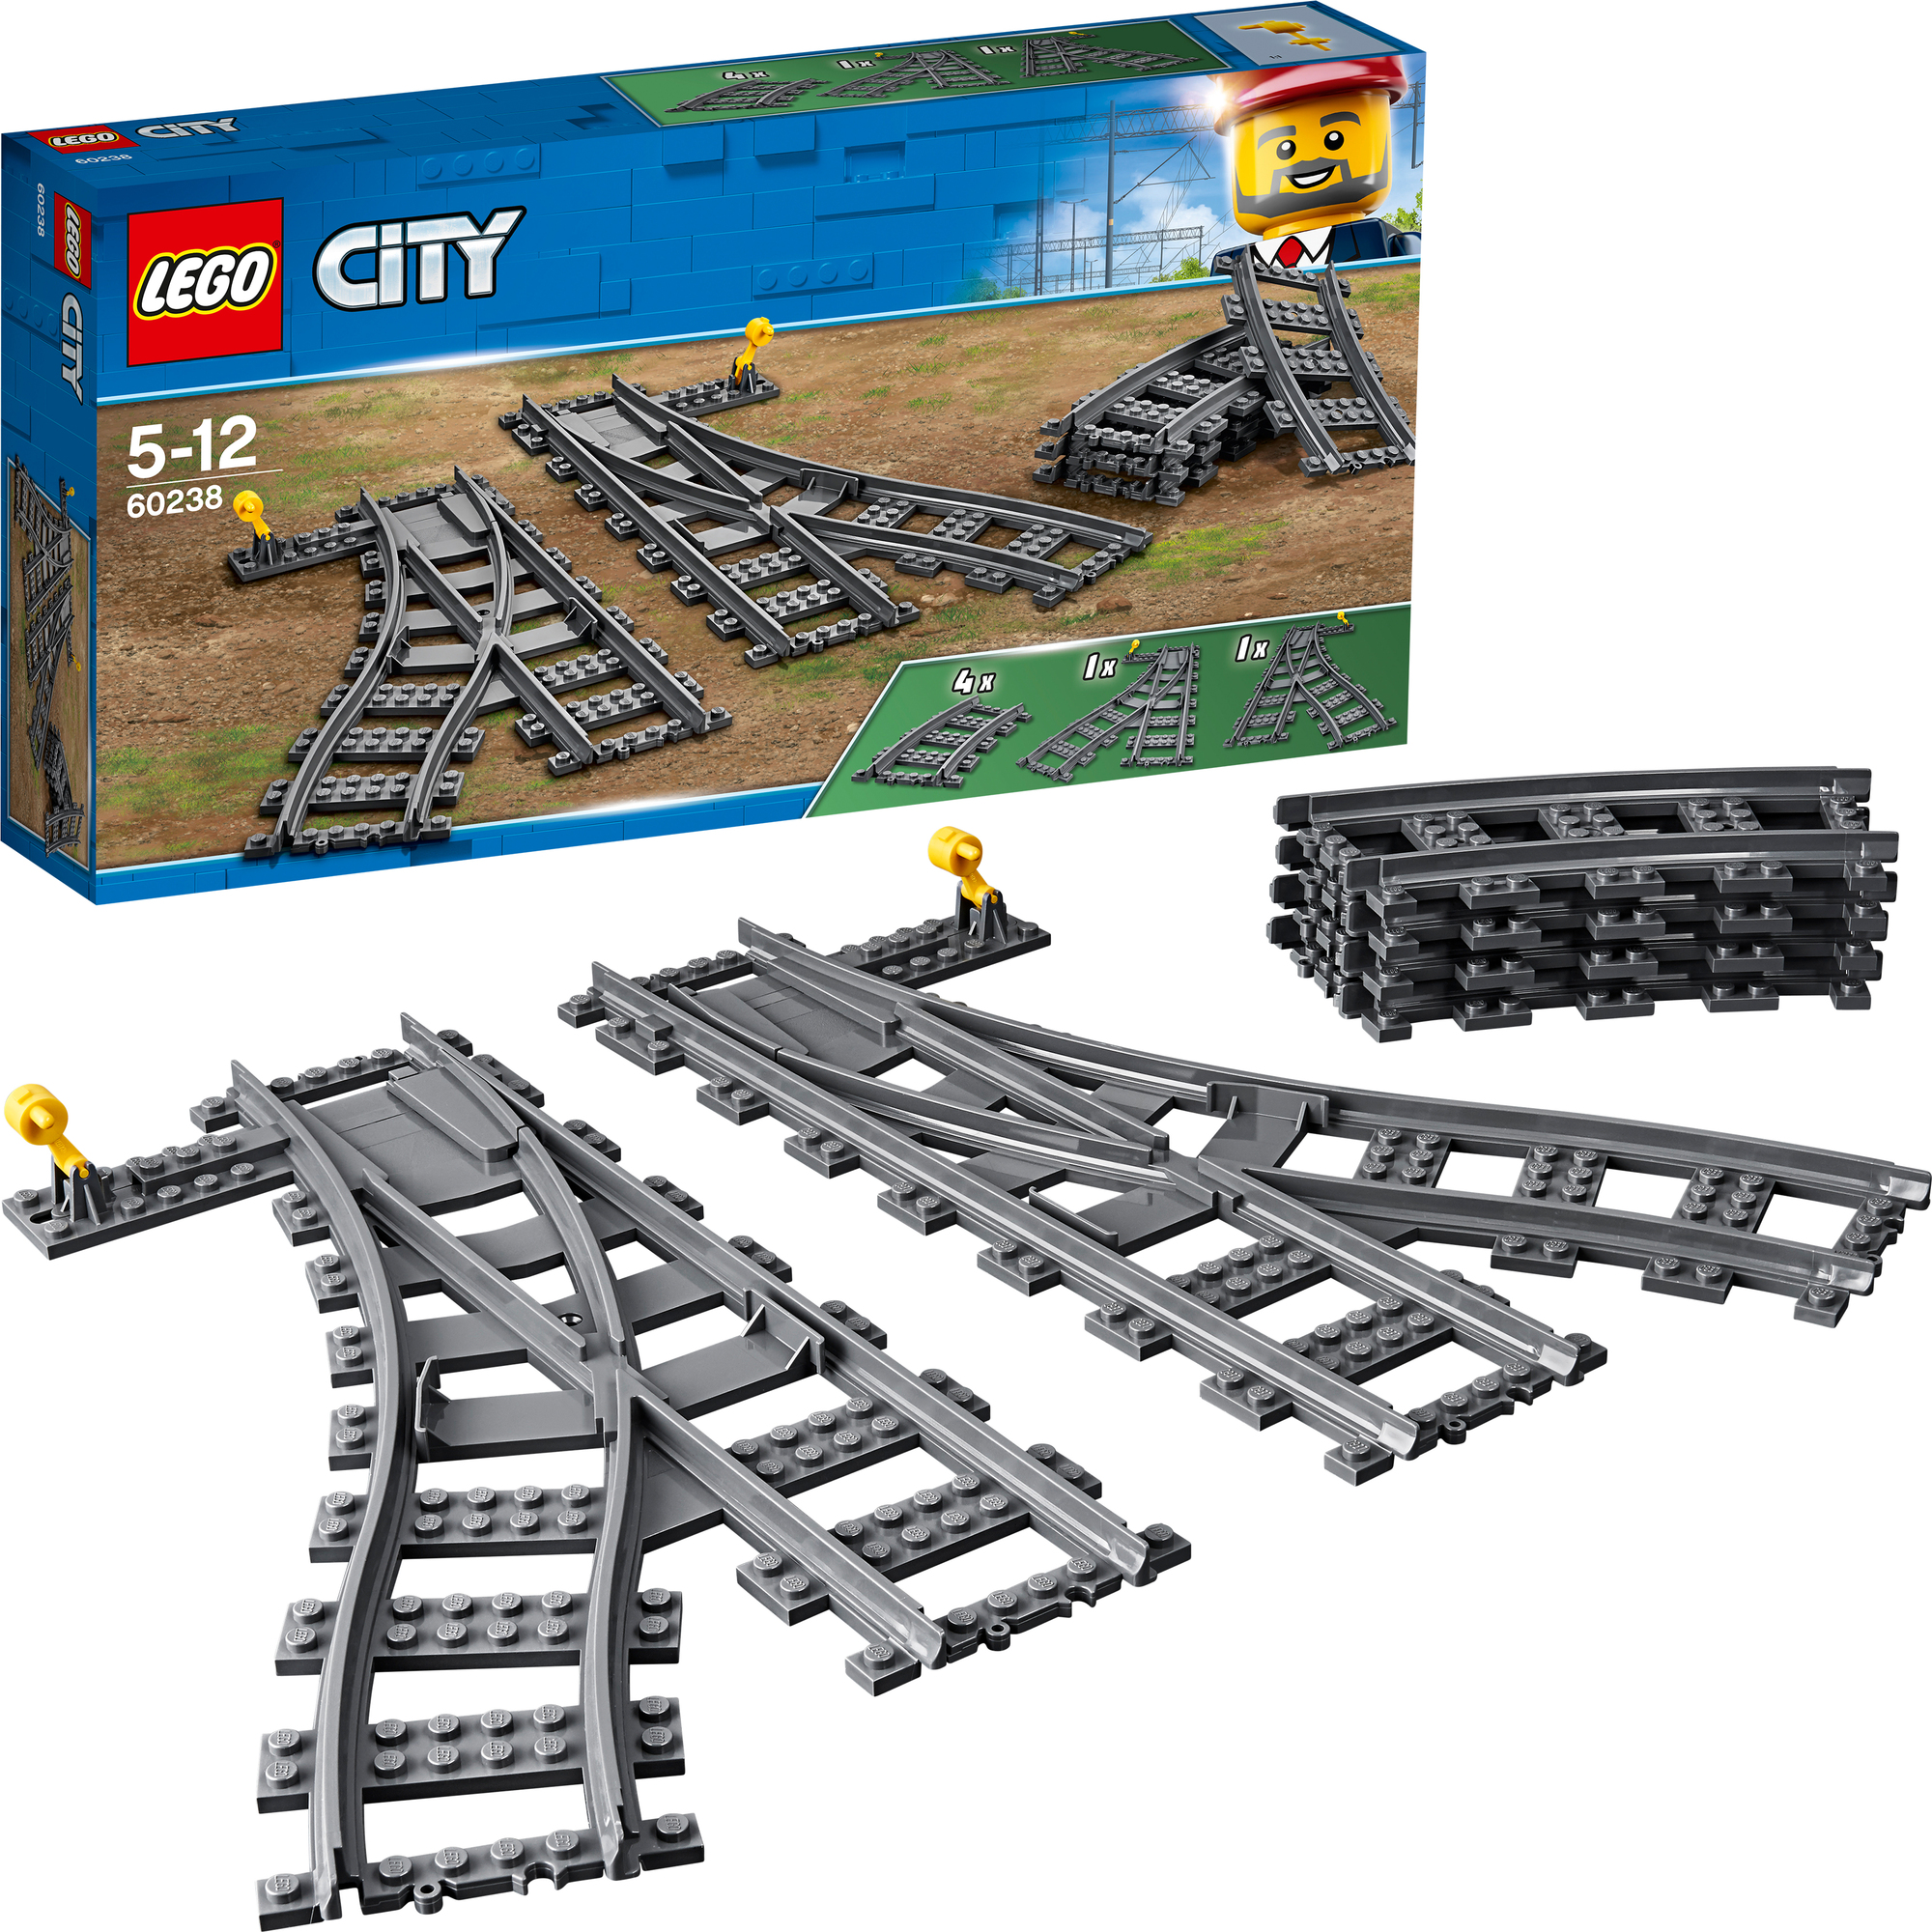 Tappetino per bagno Set di pezzi Lego di plastica o di costruzione